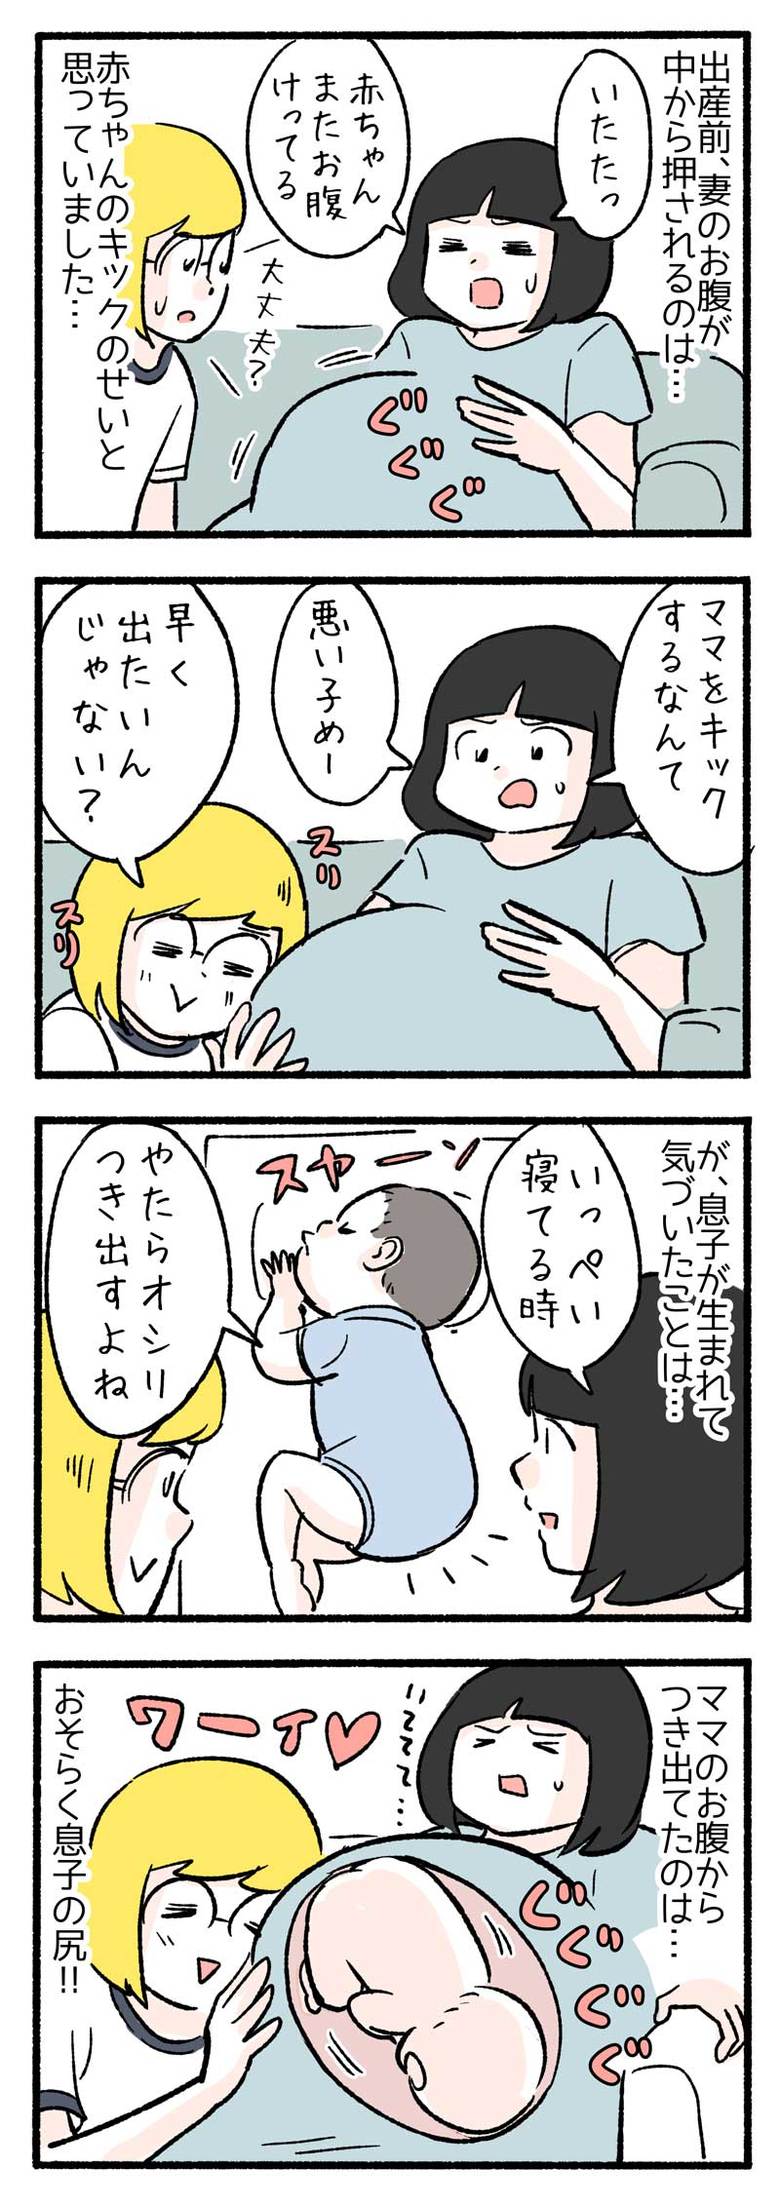 manga-nihipapa10-1